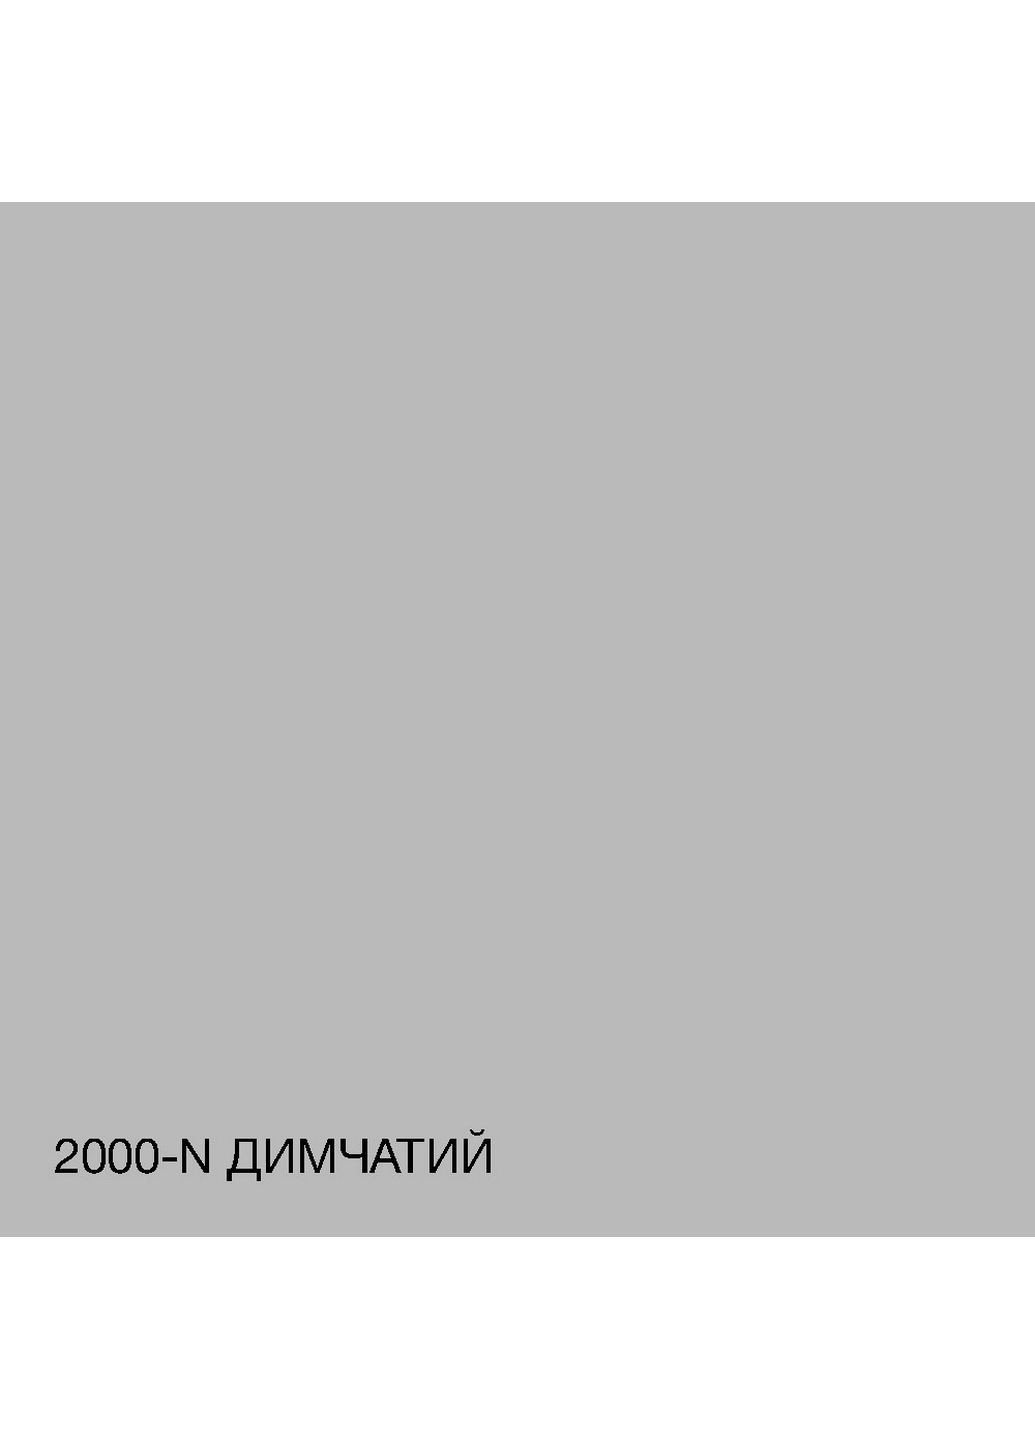 Інтер'єрна латексна фарба 2000-N 5 л SkyLine (289463395)